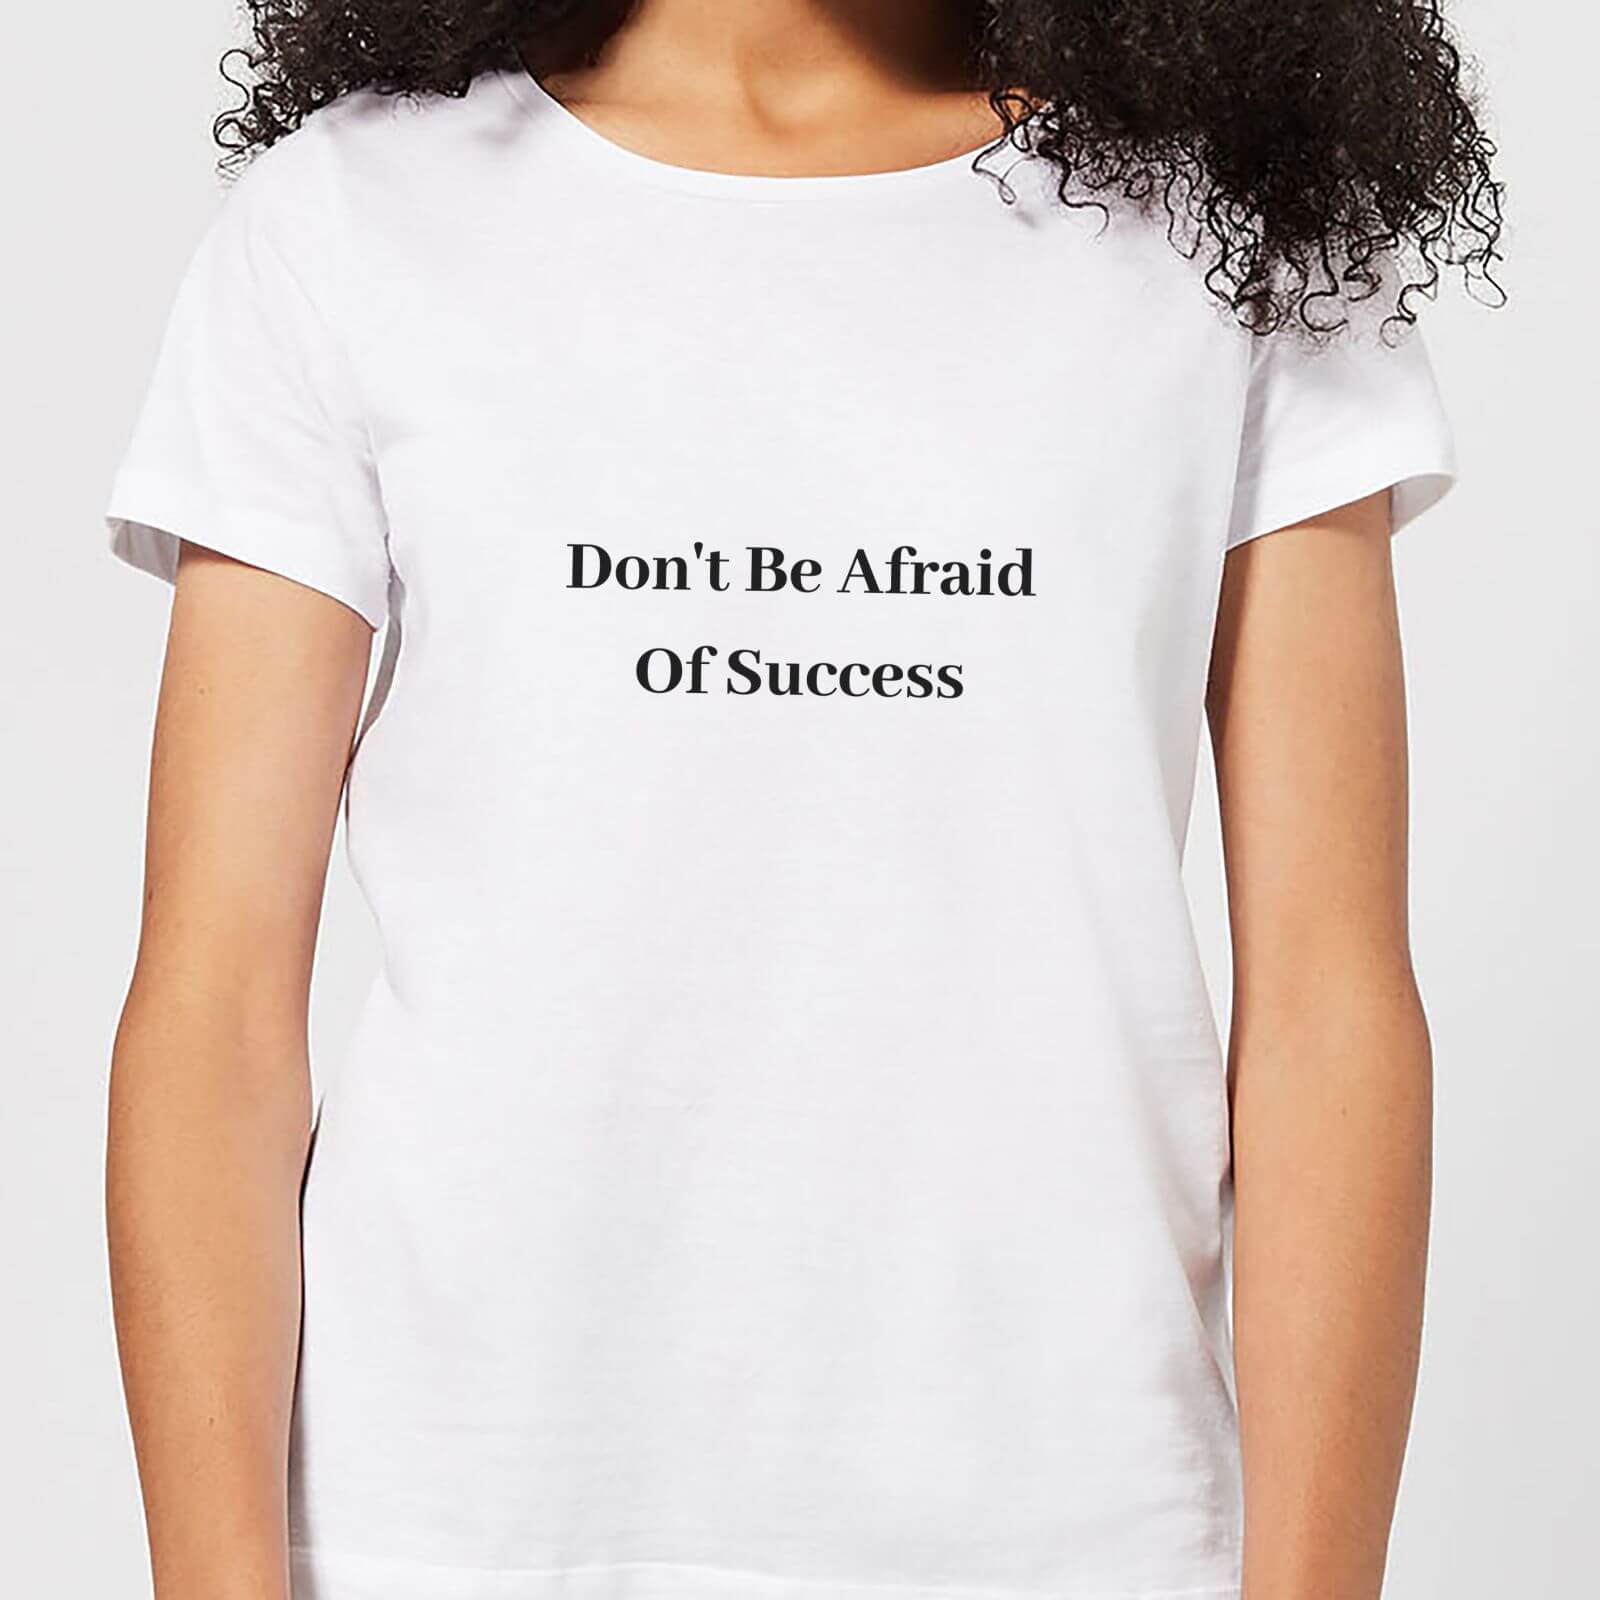 Lanre Retro Don't Be Afraid Of Success Women's T-Shirt - White - S